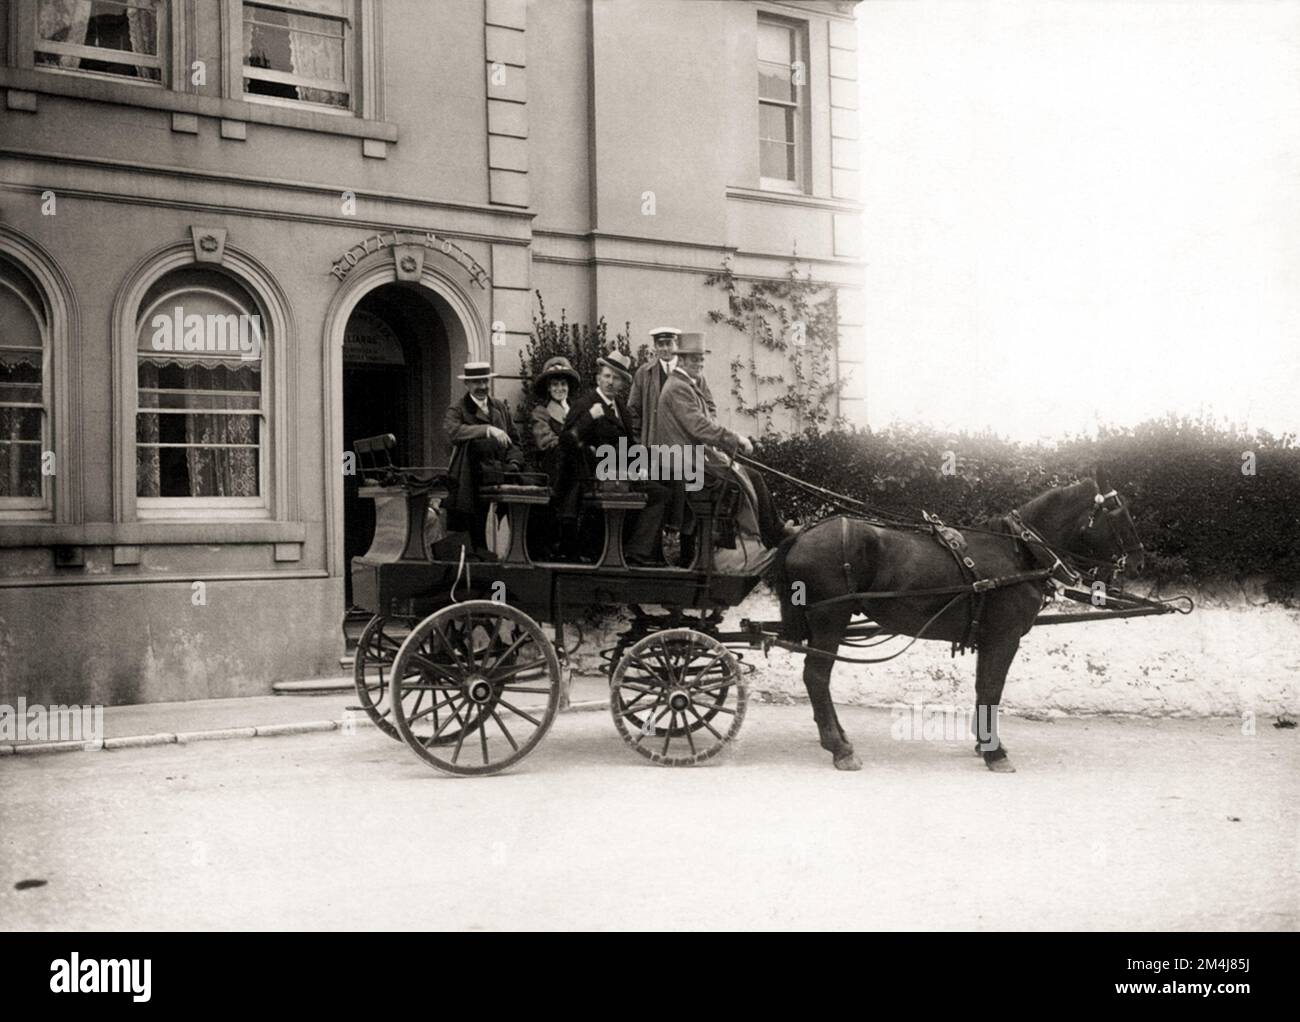 1910 ca , DEVON , INGHILTERRA , GRAN BRETAGNA : Un gruppo di turisti in carrozza trainata da cavalli davanti all'ingresso DELL'HOTEL ROYAL a TORQUAY . Fotografo sconosciuto . - GRAND BRETAGNA - VIEW - FOTO STORICHE - STORIA - GEOGRAFIA - GEOGRAFIA - PANORAMA - PAESAGGIO - OTTOCENTO - OTTOCENTO - '800 - EPOCA VITTORIANA - HERA VITTORIANA - BELLE EPOQUE - ALBERGO - ARCHITETTURA - ARCHITETTURA - gita - giostra trainata da cavalli - divertimento - Divertimento - sorriso - sorriso - sorriso - strada - via - strada - TURISMO - TURISMO --- Archivio GBB Foto Stock